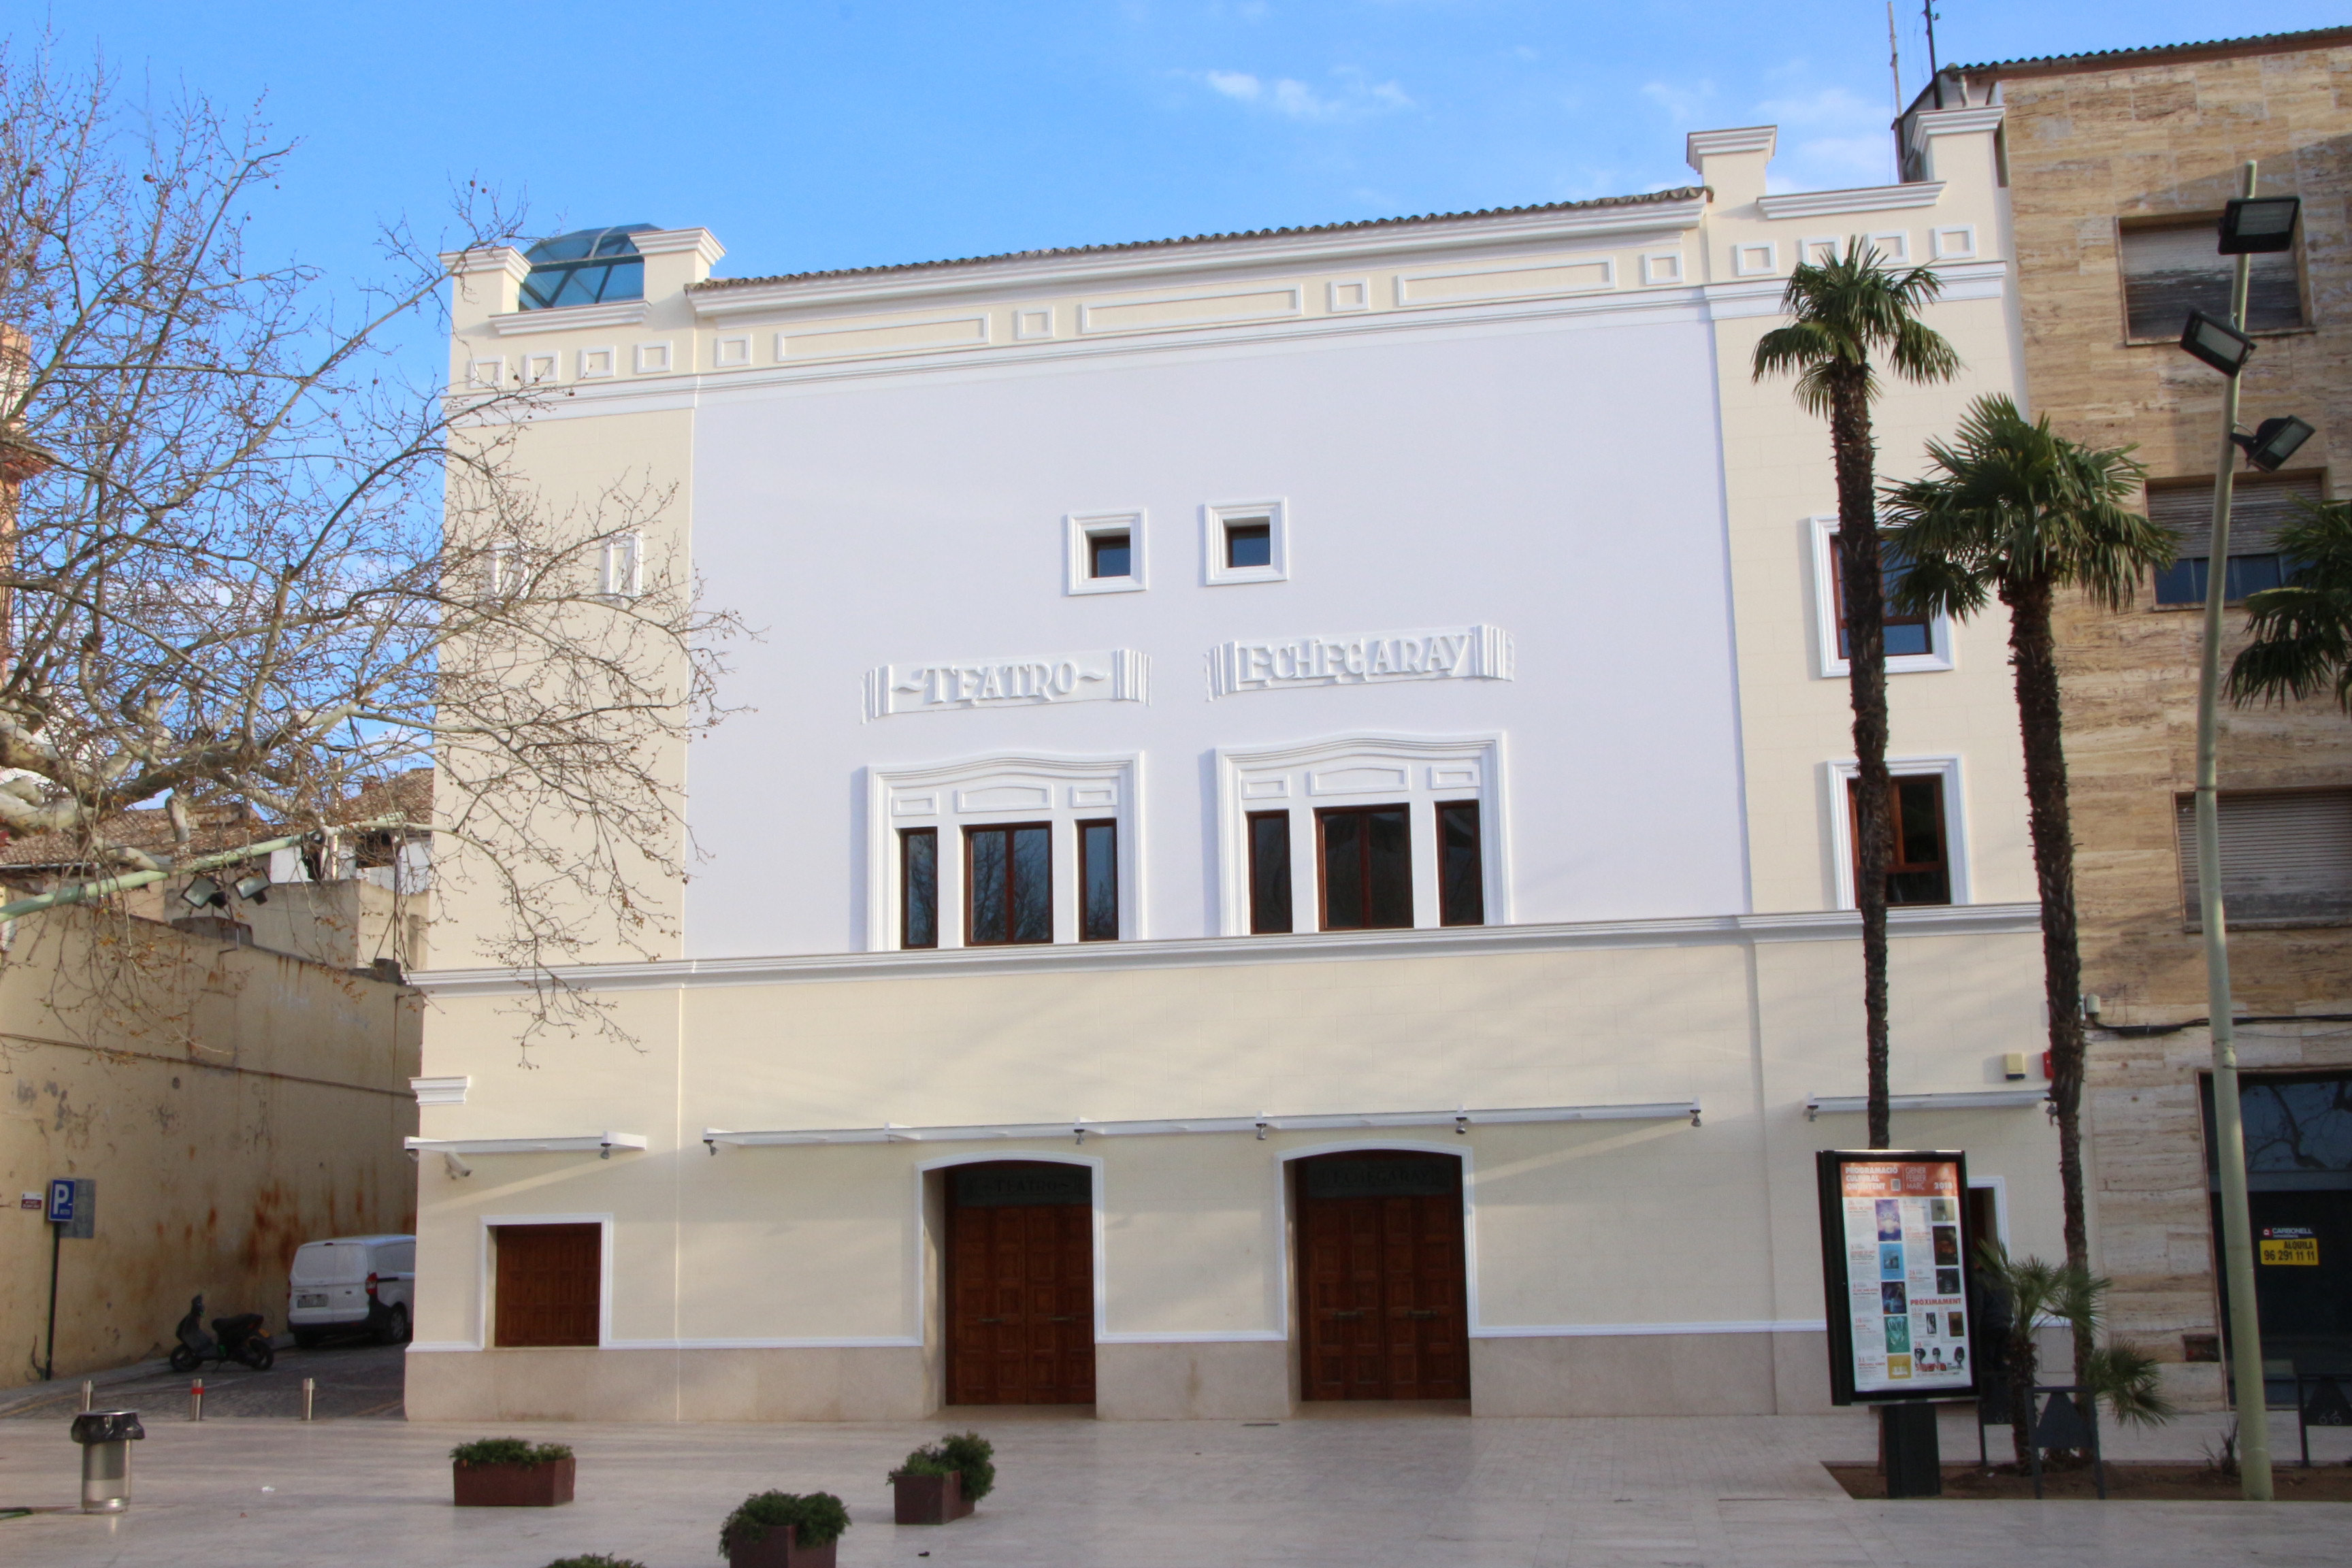 Teatro Echegaray Ontinyent